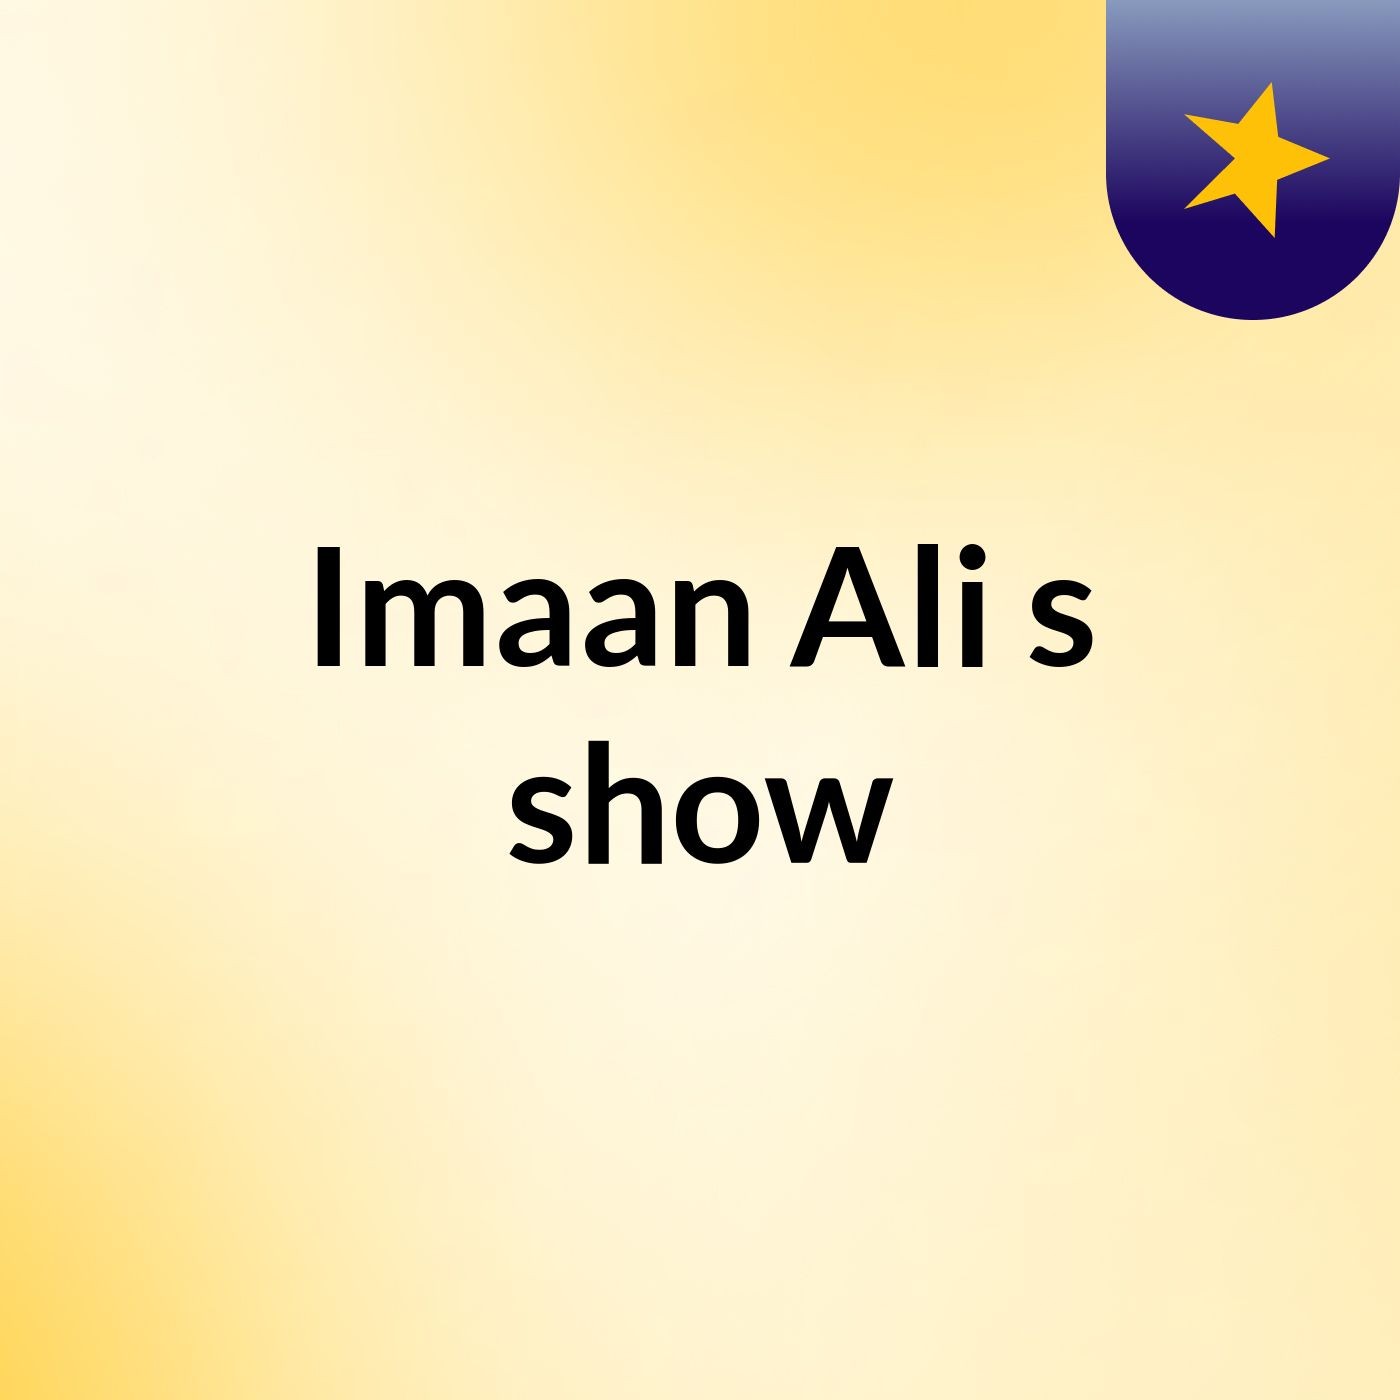 Episode 4 - Imaan Ali's show